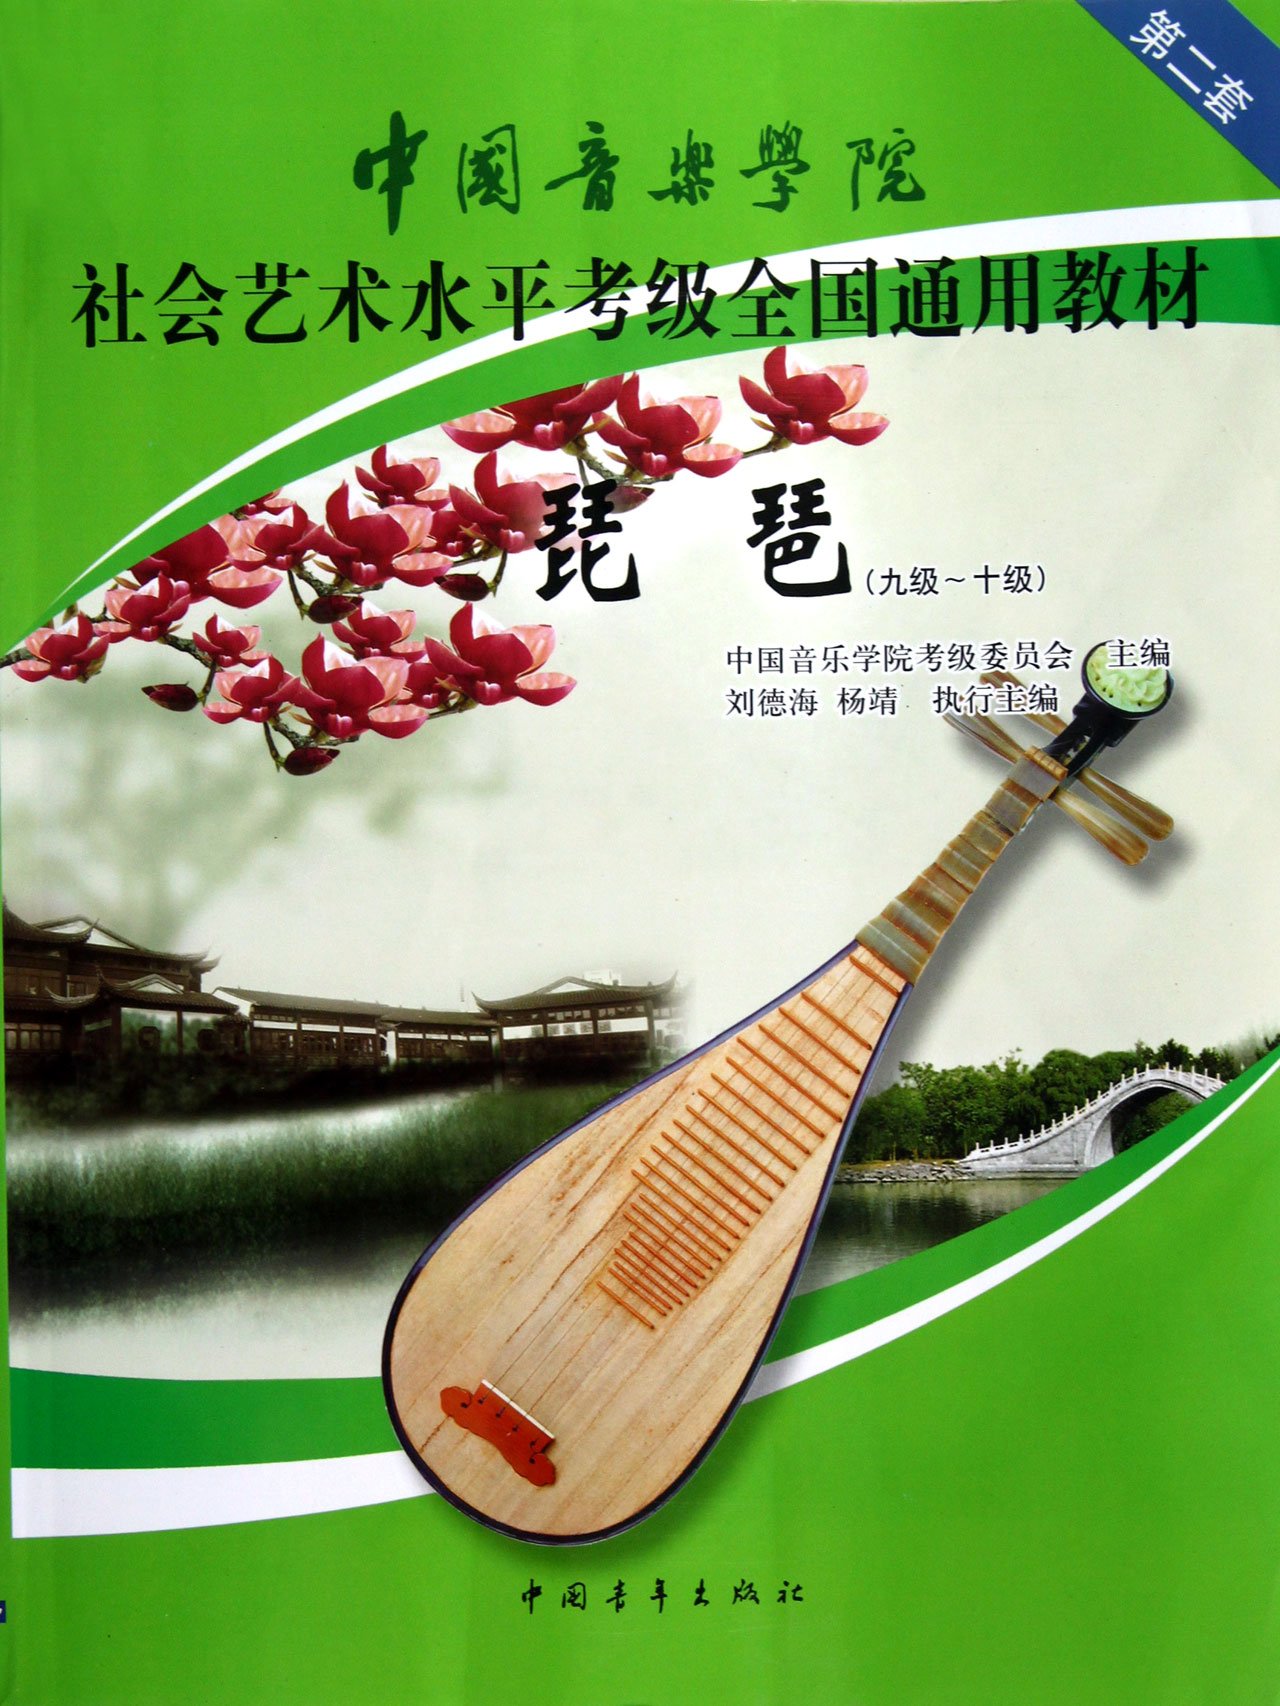 正版琵琶 9级-10级中国音乐学院社会艺术水平考级全国通用教材